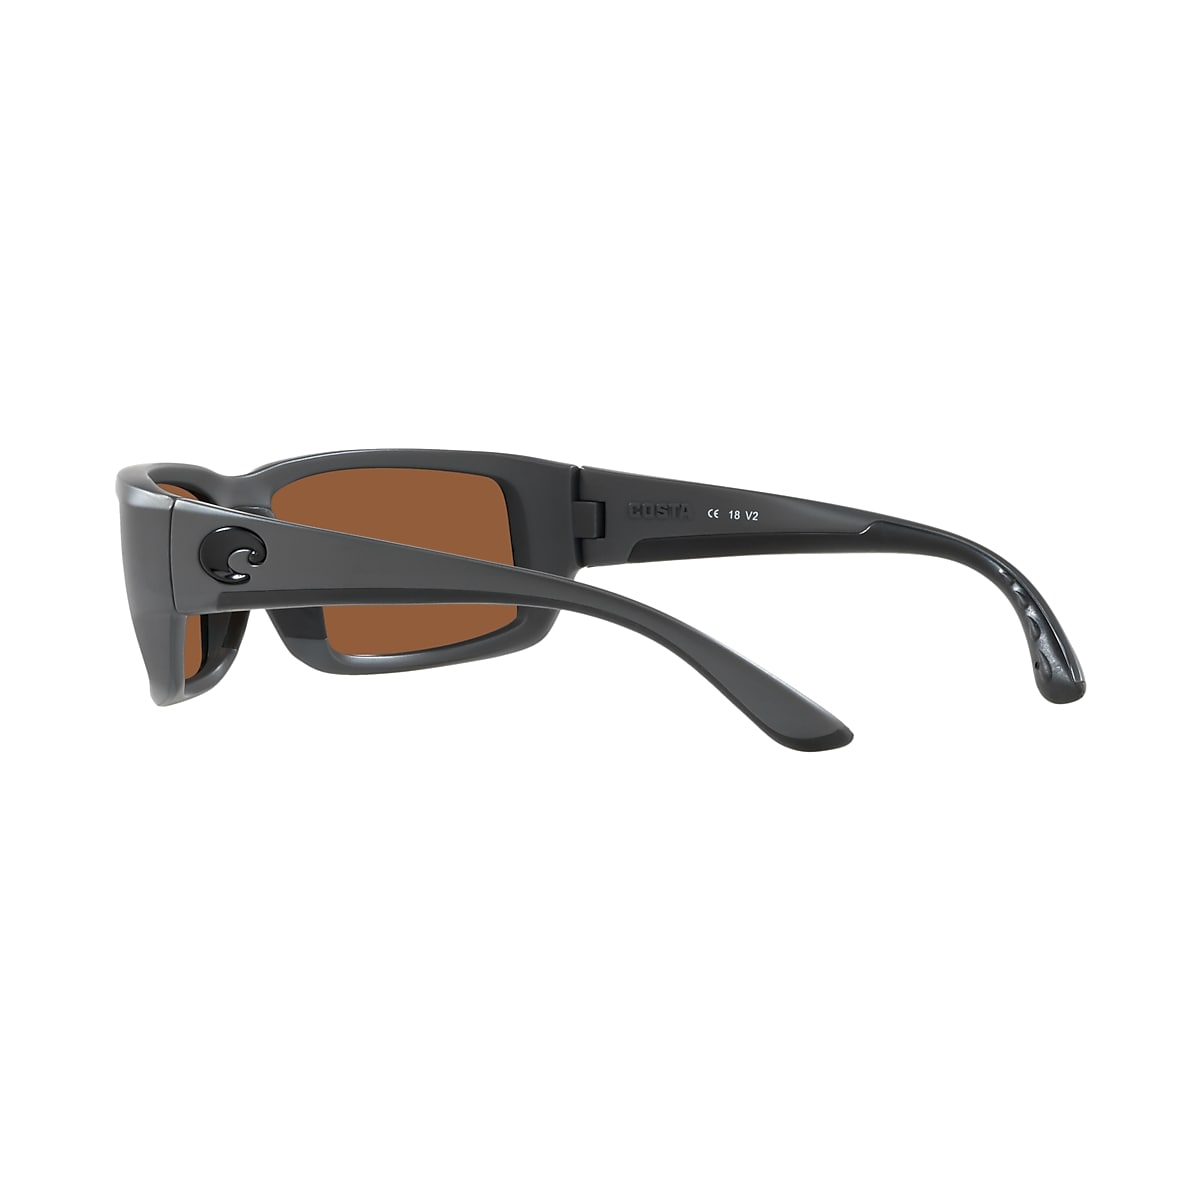 Fantail Polarized Sunglasses in Copper Silver Mirror | Costa Del Mar®